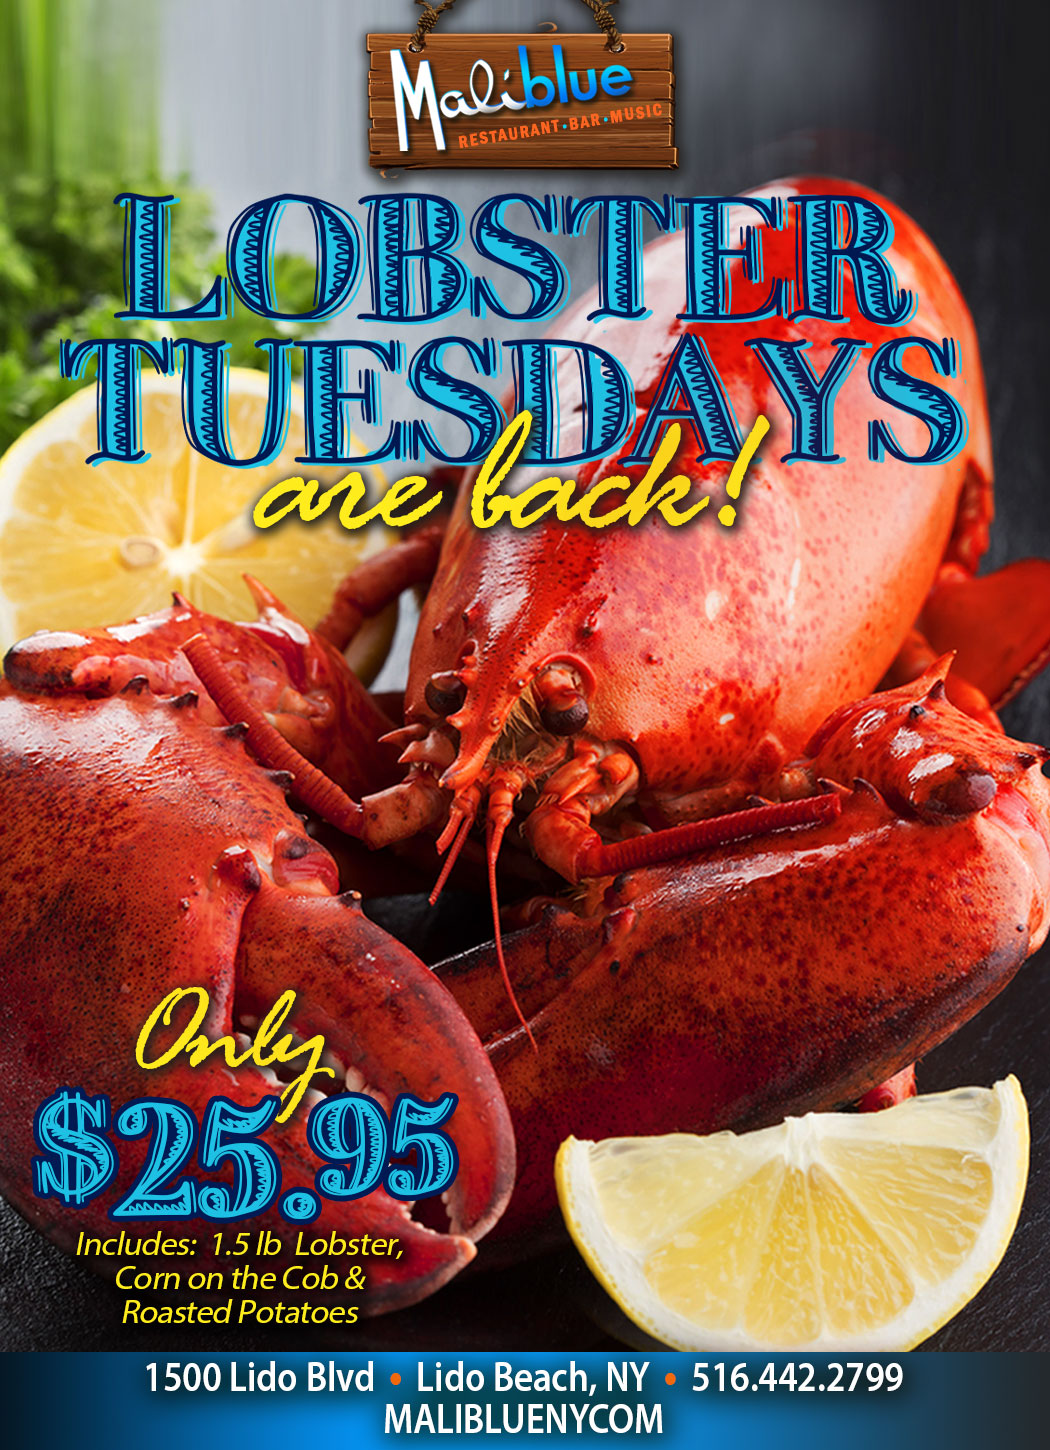 Lobster Tuesdays at Maliblue Restaurant